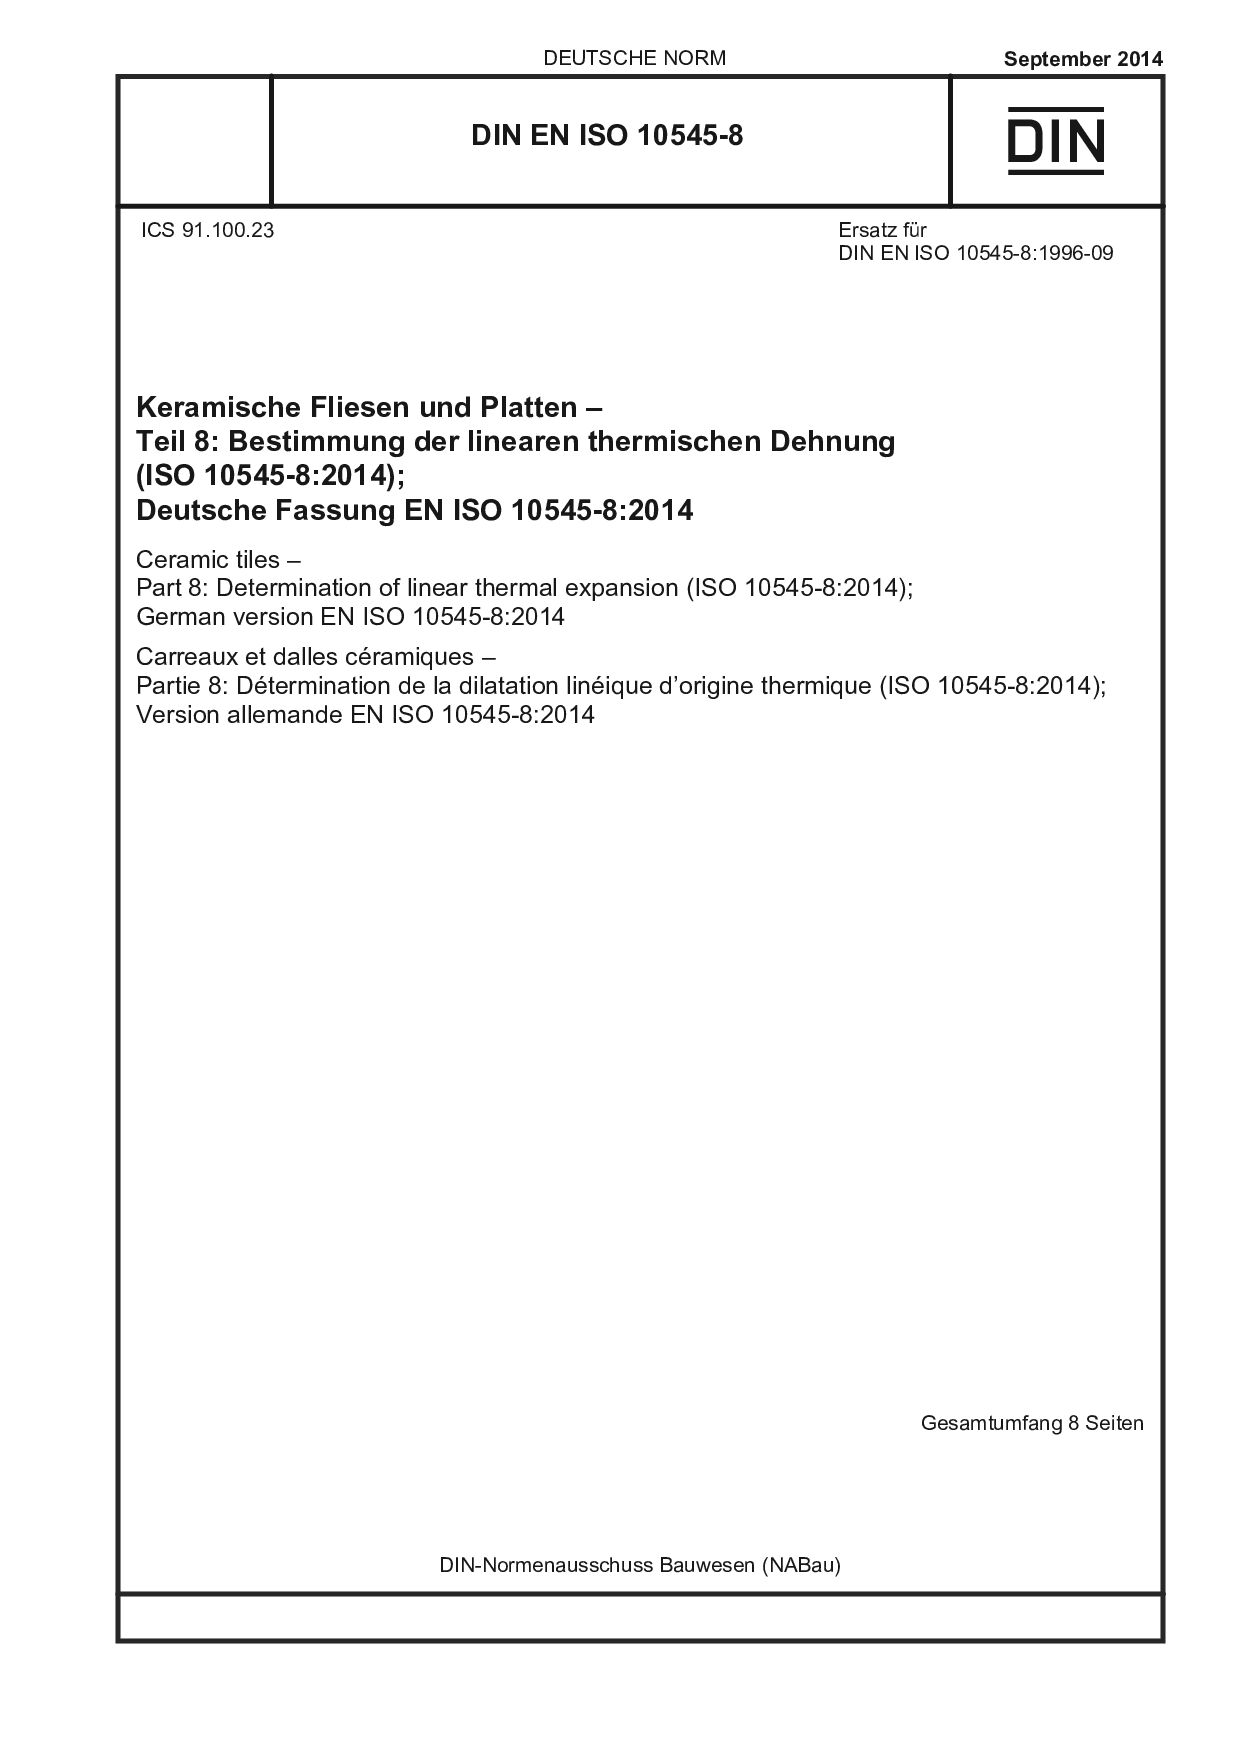 DIN EN ISO 10545-8:2014